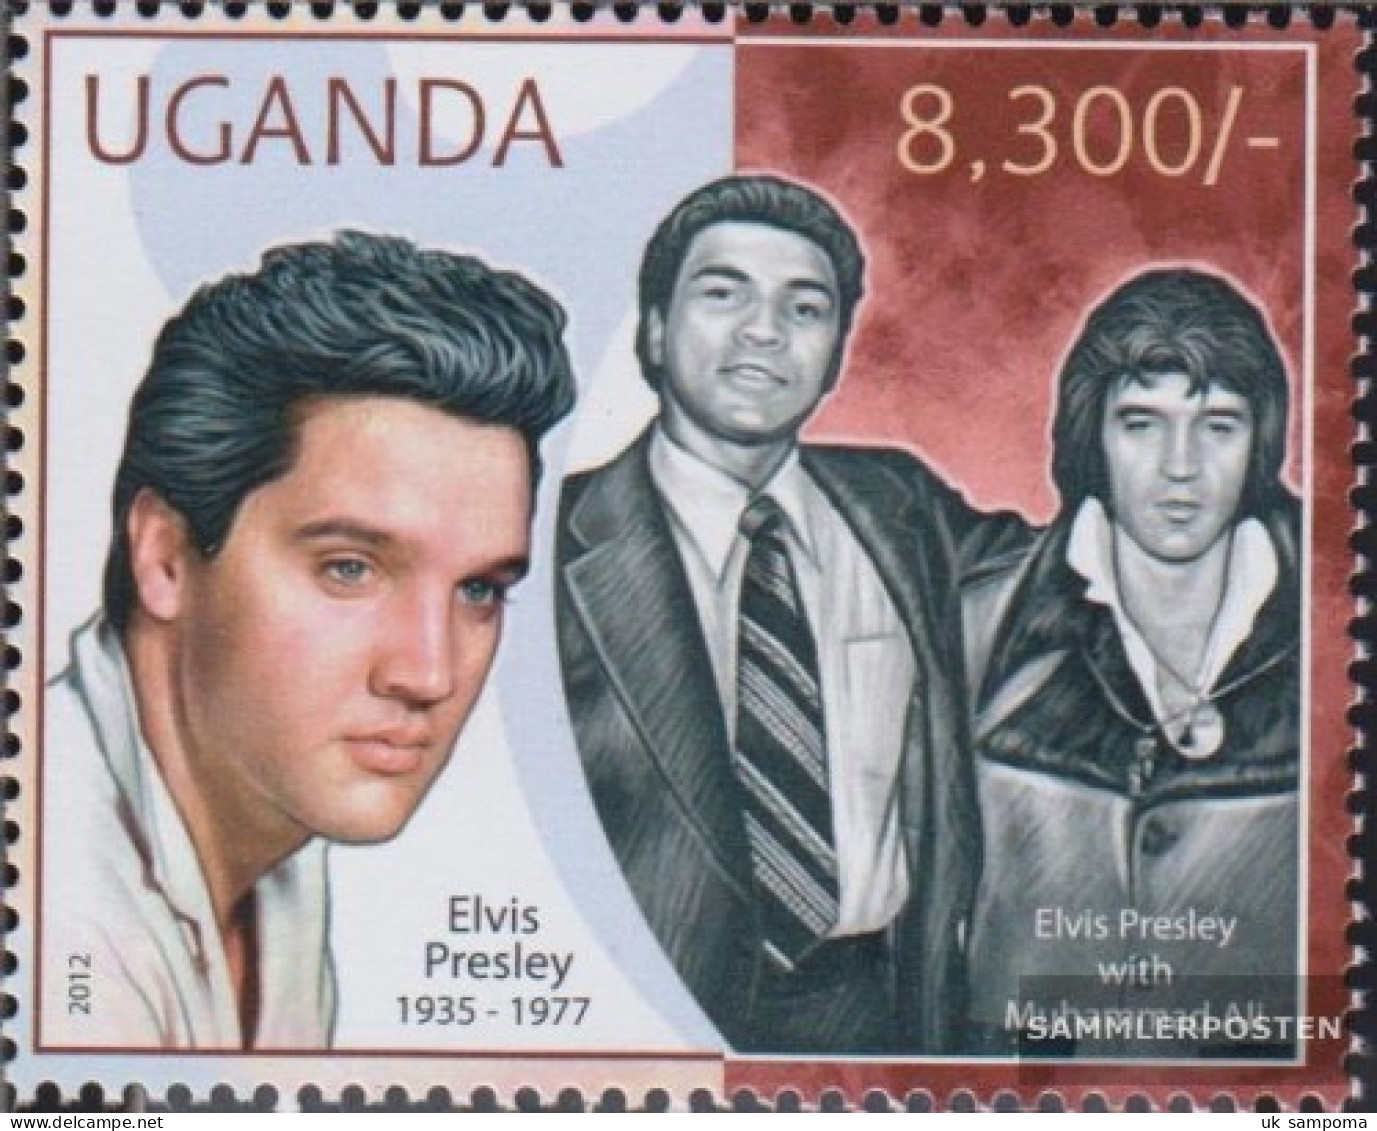 Uganda 2853 (complete Issue) Unmounted Mint / Never Hinged 2012 Elvis Presley - Oeganda (1962-...)